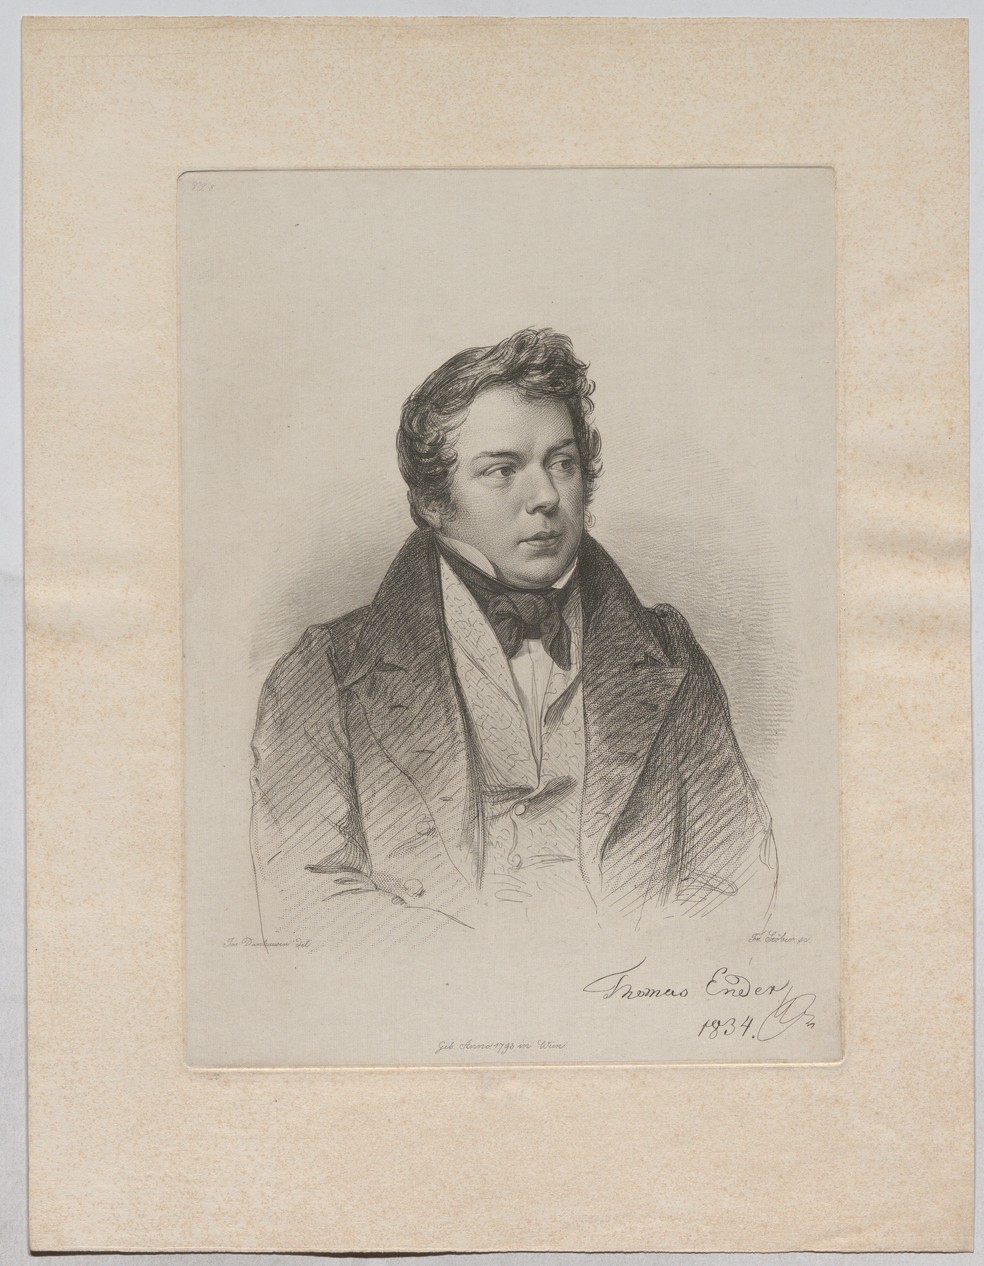  Retrato de Thomas Ender, por Franz Stober, de 1828  — Foto: Albertina Museum, Viena